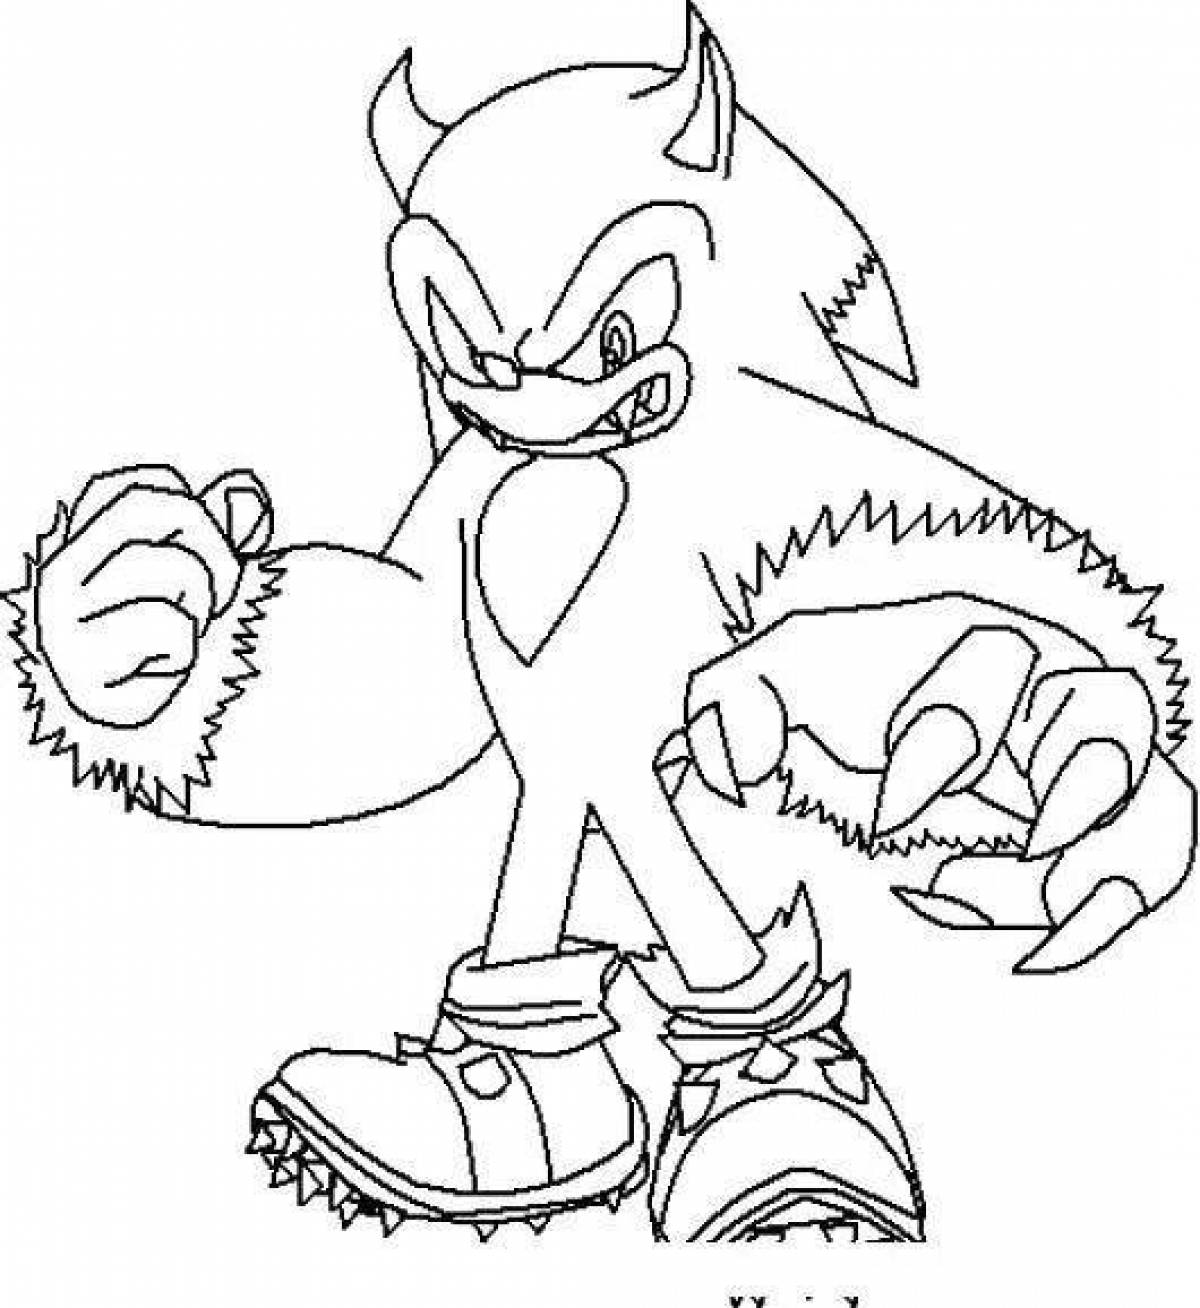 Sonic werewolf #1